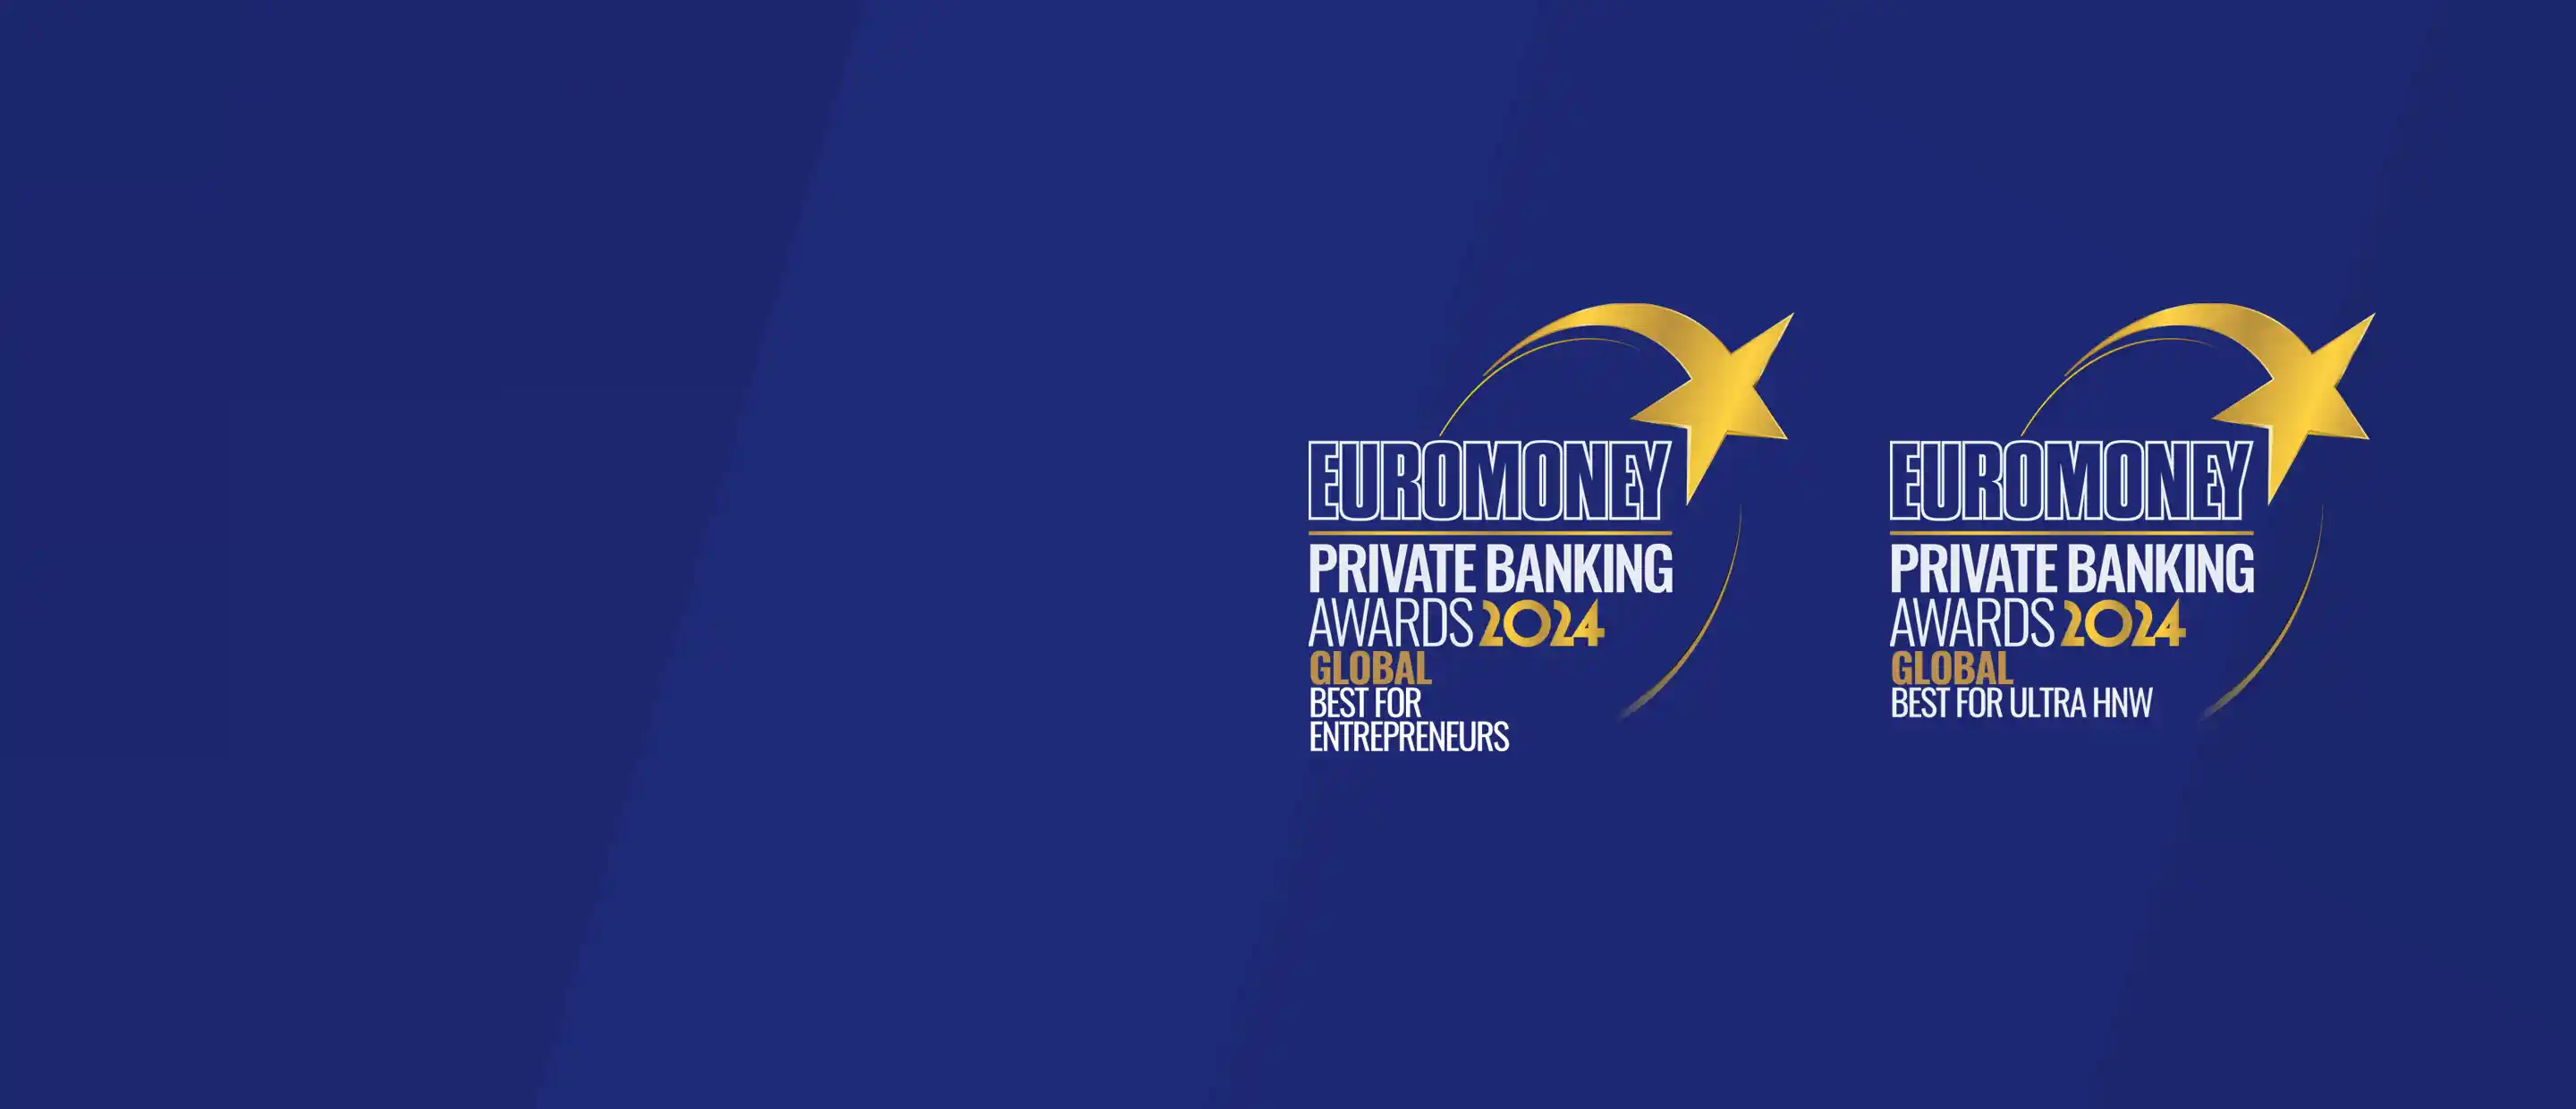 Euro money awards: Auszeichnung World’s Best Bank UHNWI and Entrepreneure